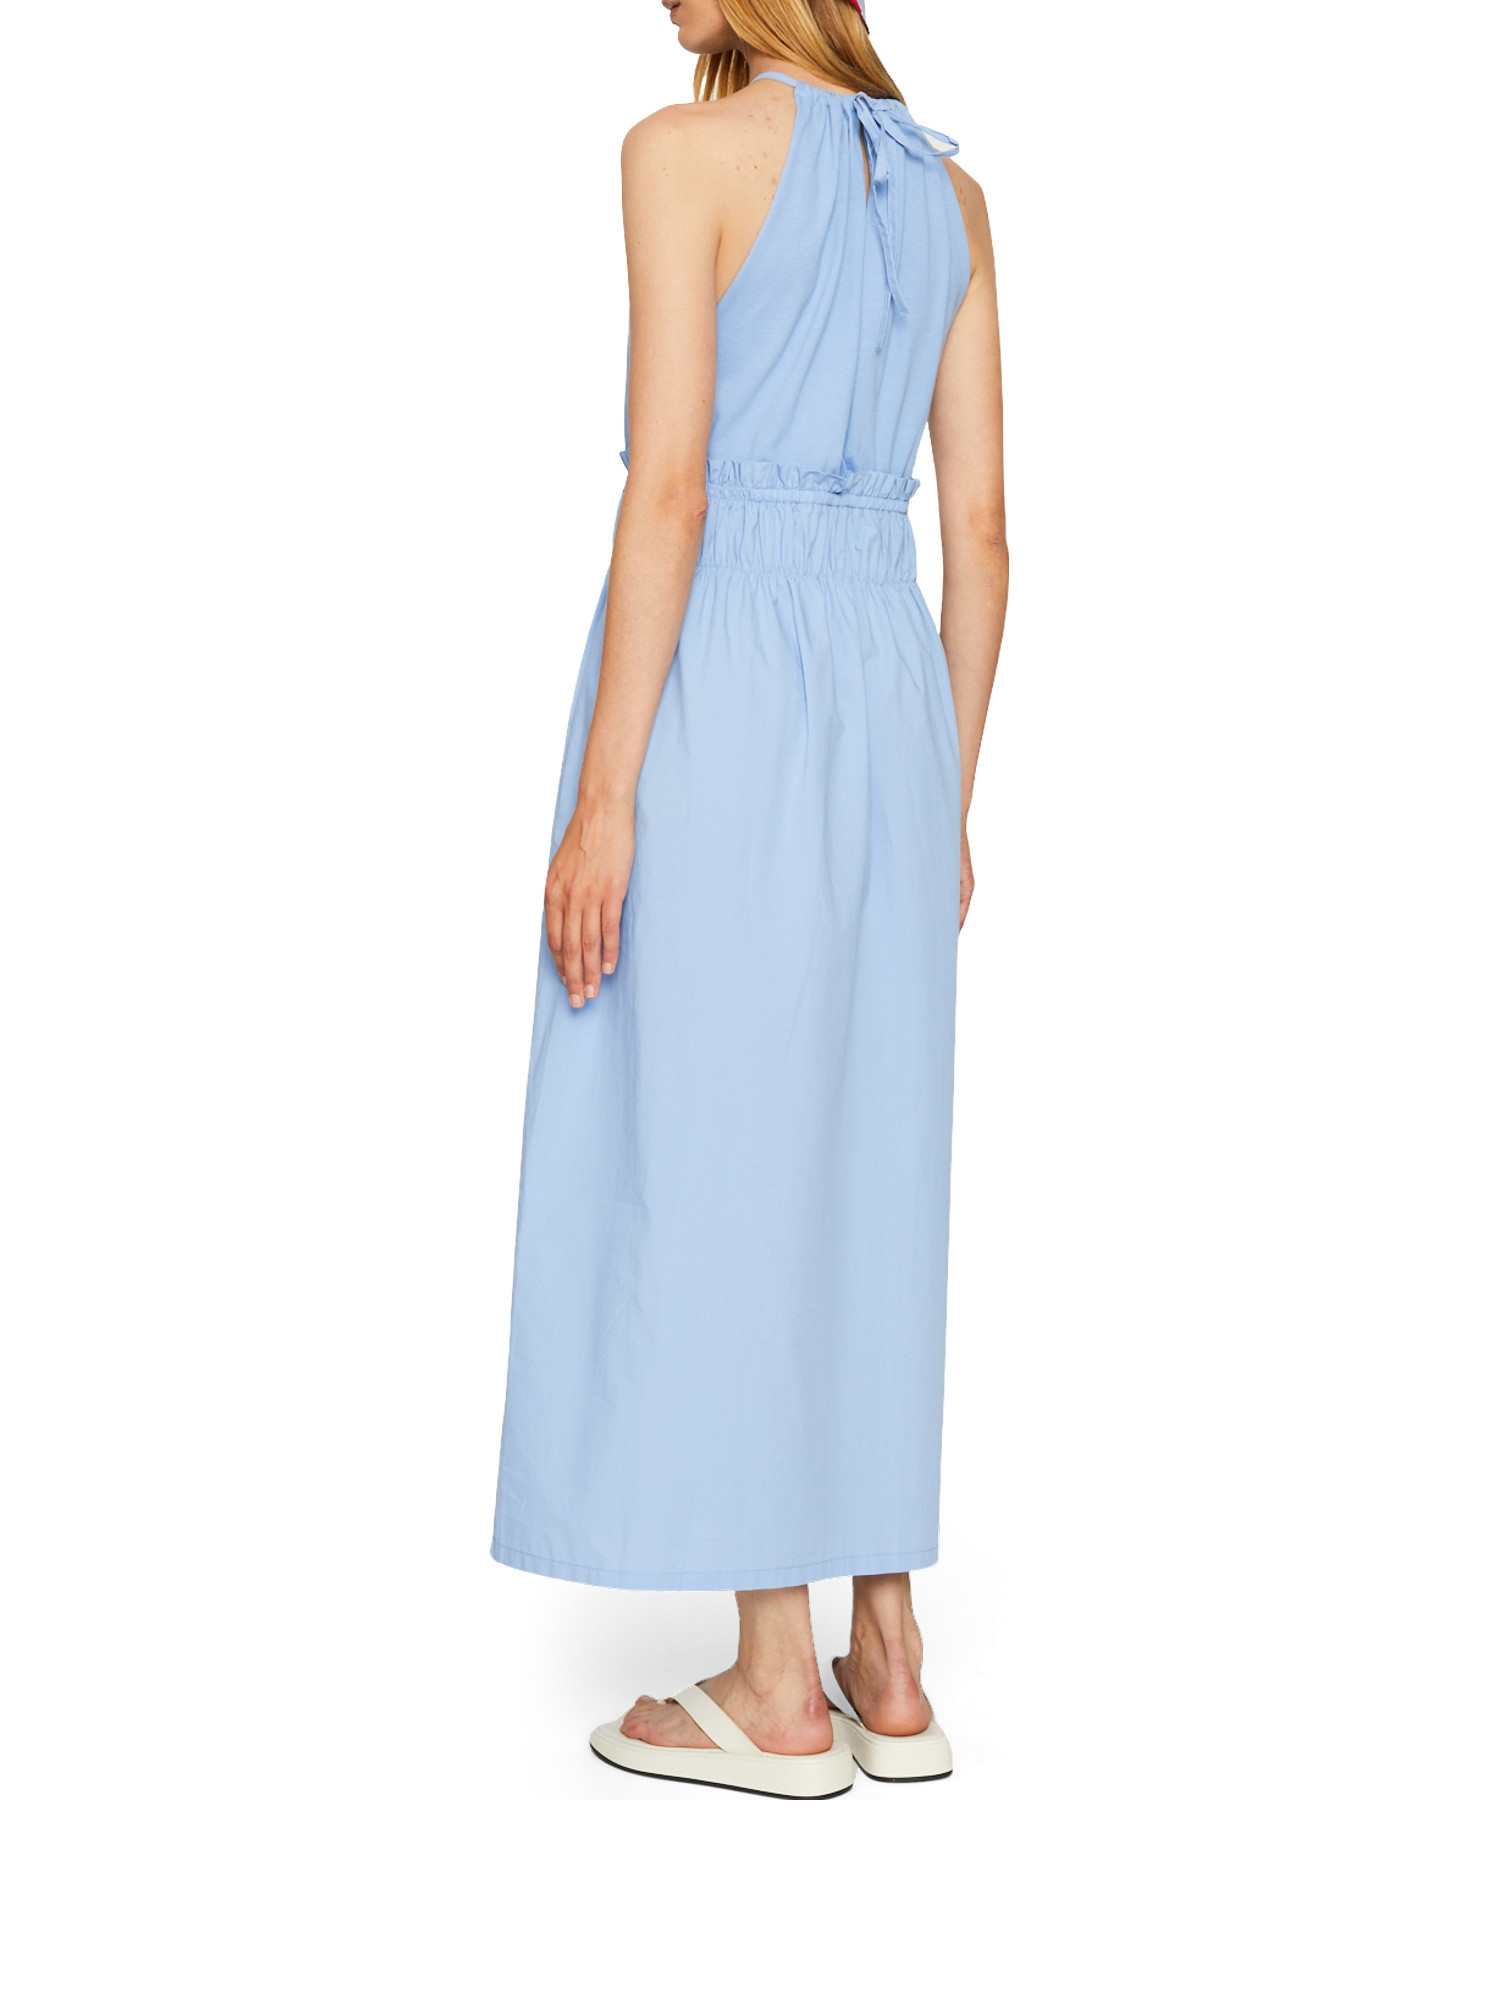 Dress, Light Blue, large image number 3